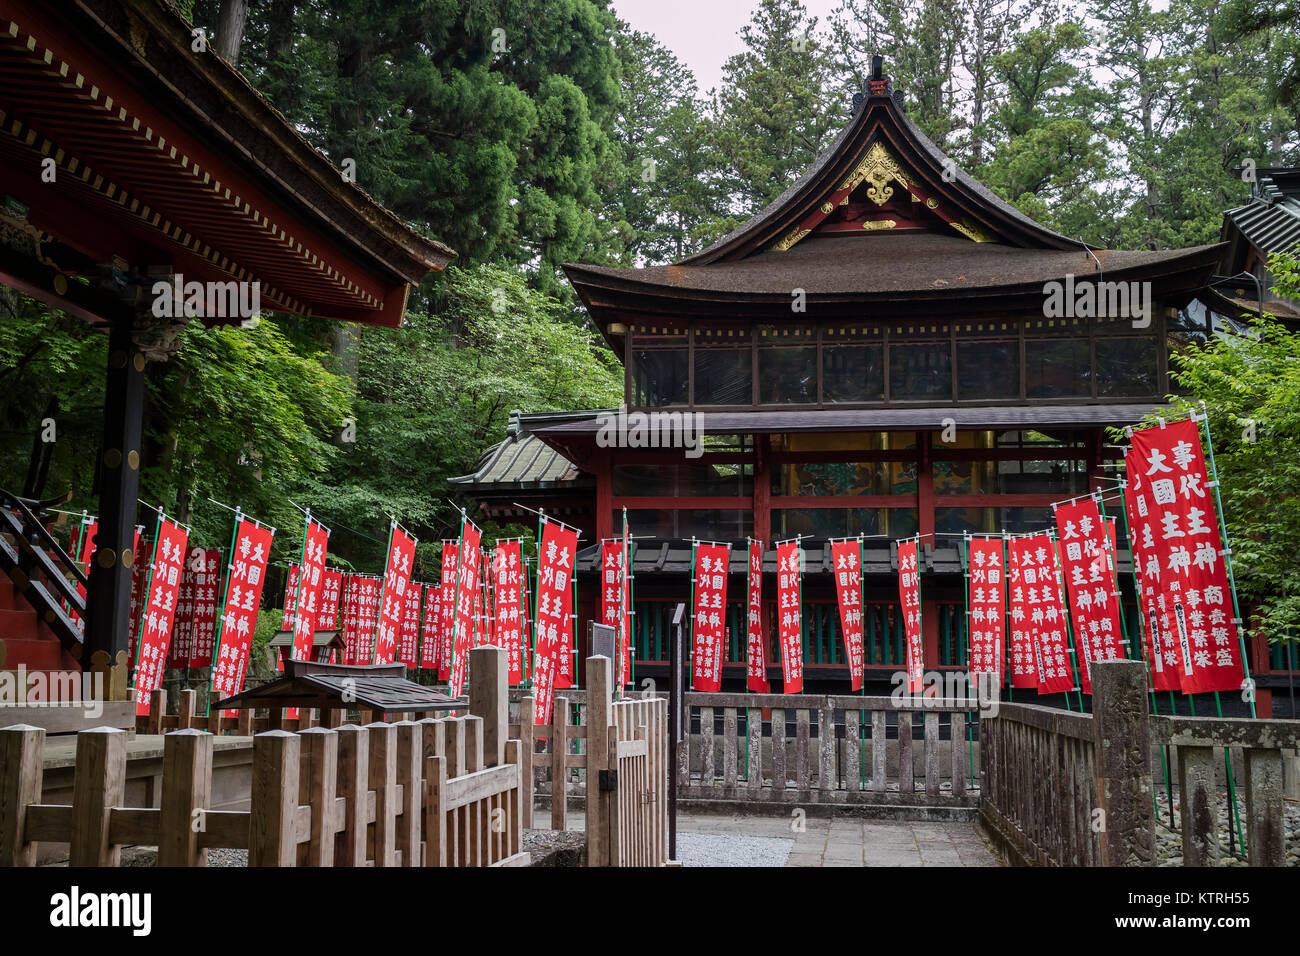 Ciudad de Fujiyoshida, Japón, 13 de junio de 2017: Rojo santuario Sengen Fujiyoshida pancartas en el Santuario en la ciudad de Fujiyoshida Foto de stock